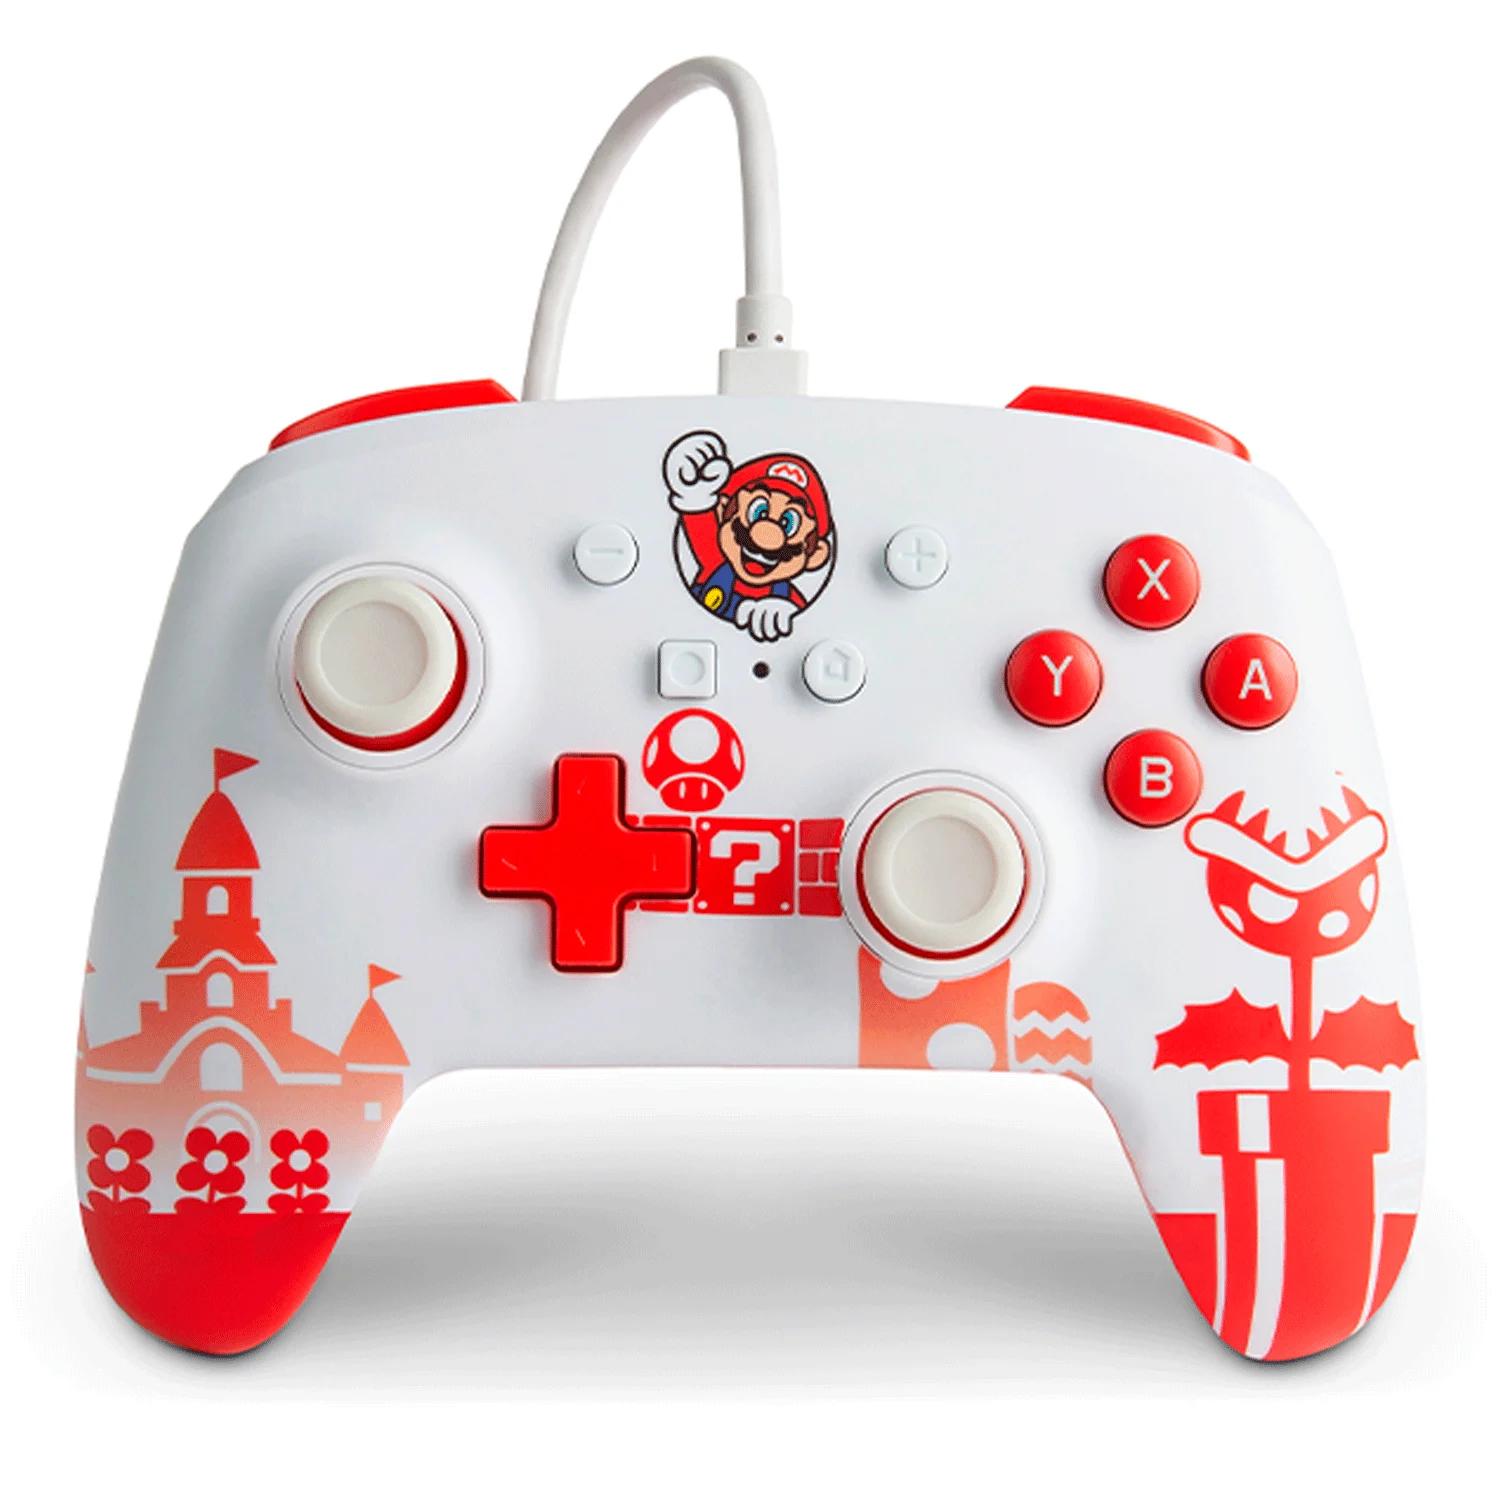 Controle PowerA Enhanced Wired para Nintendo Switch Mario - Vermelho e Branco (PWA-A-02521)